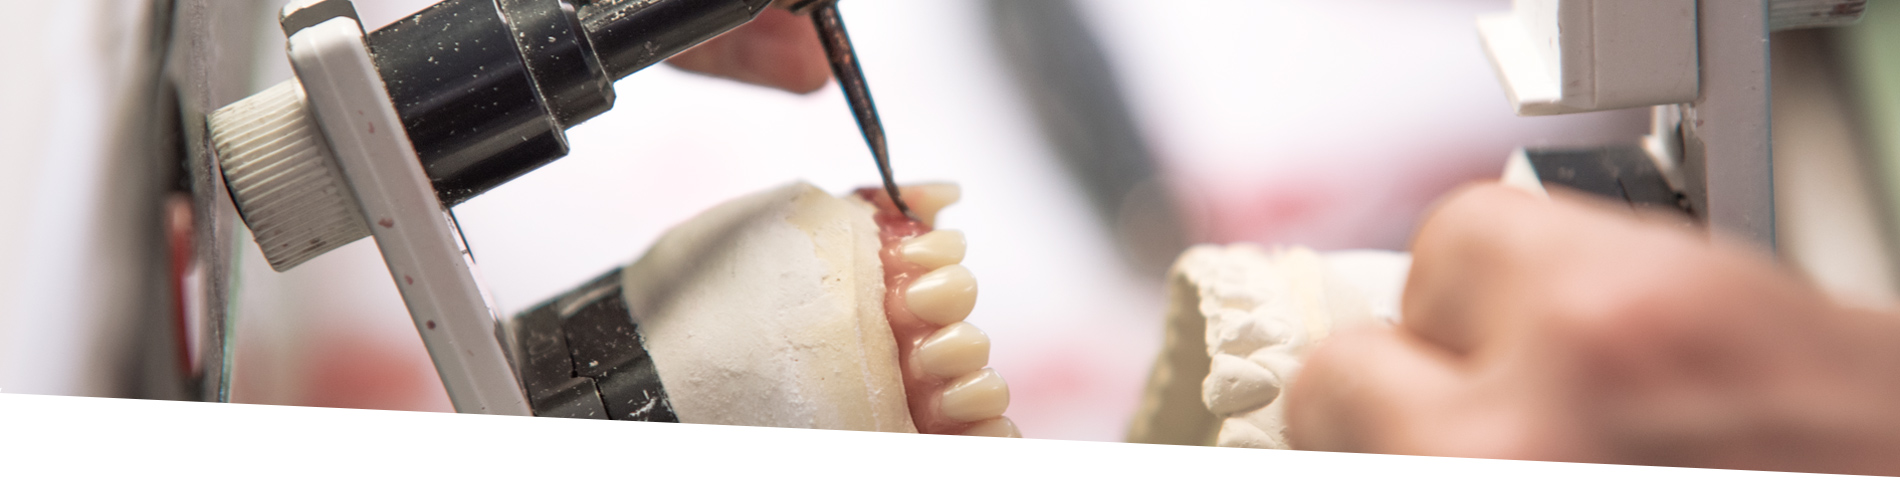 Protesi Dentali in Zirconia Prettau 100% | Odontocap